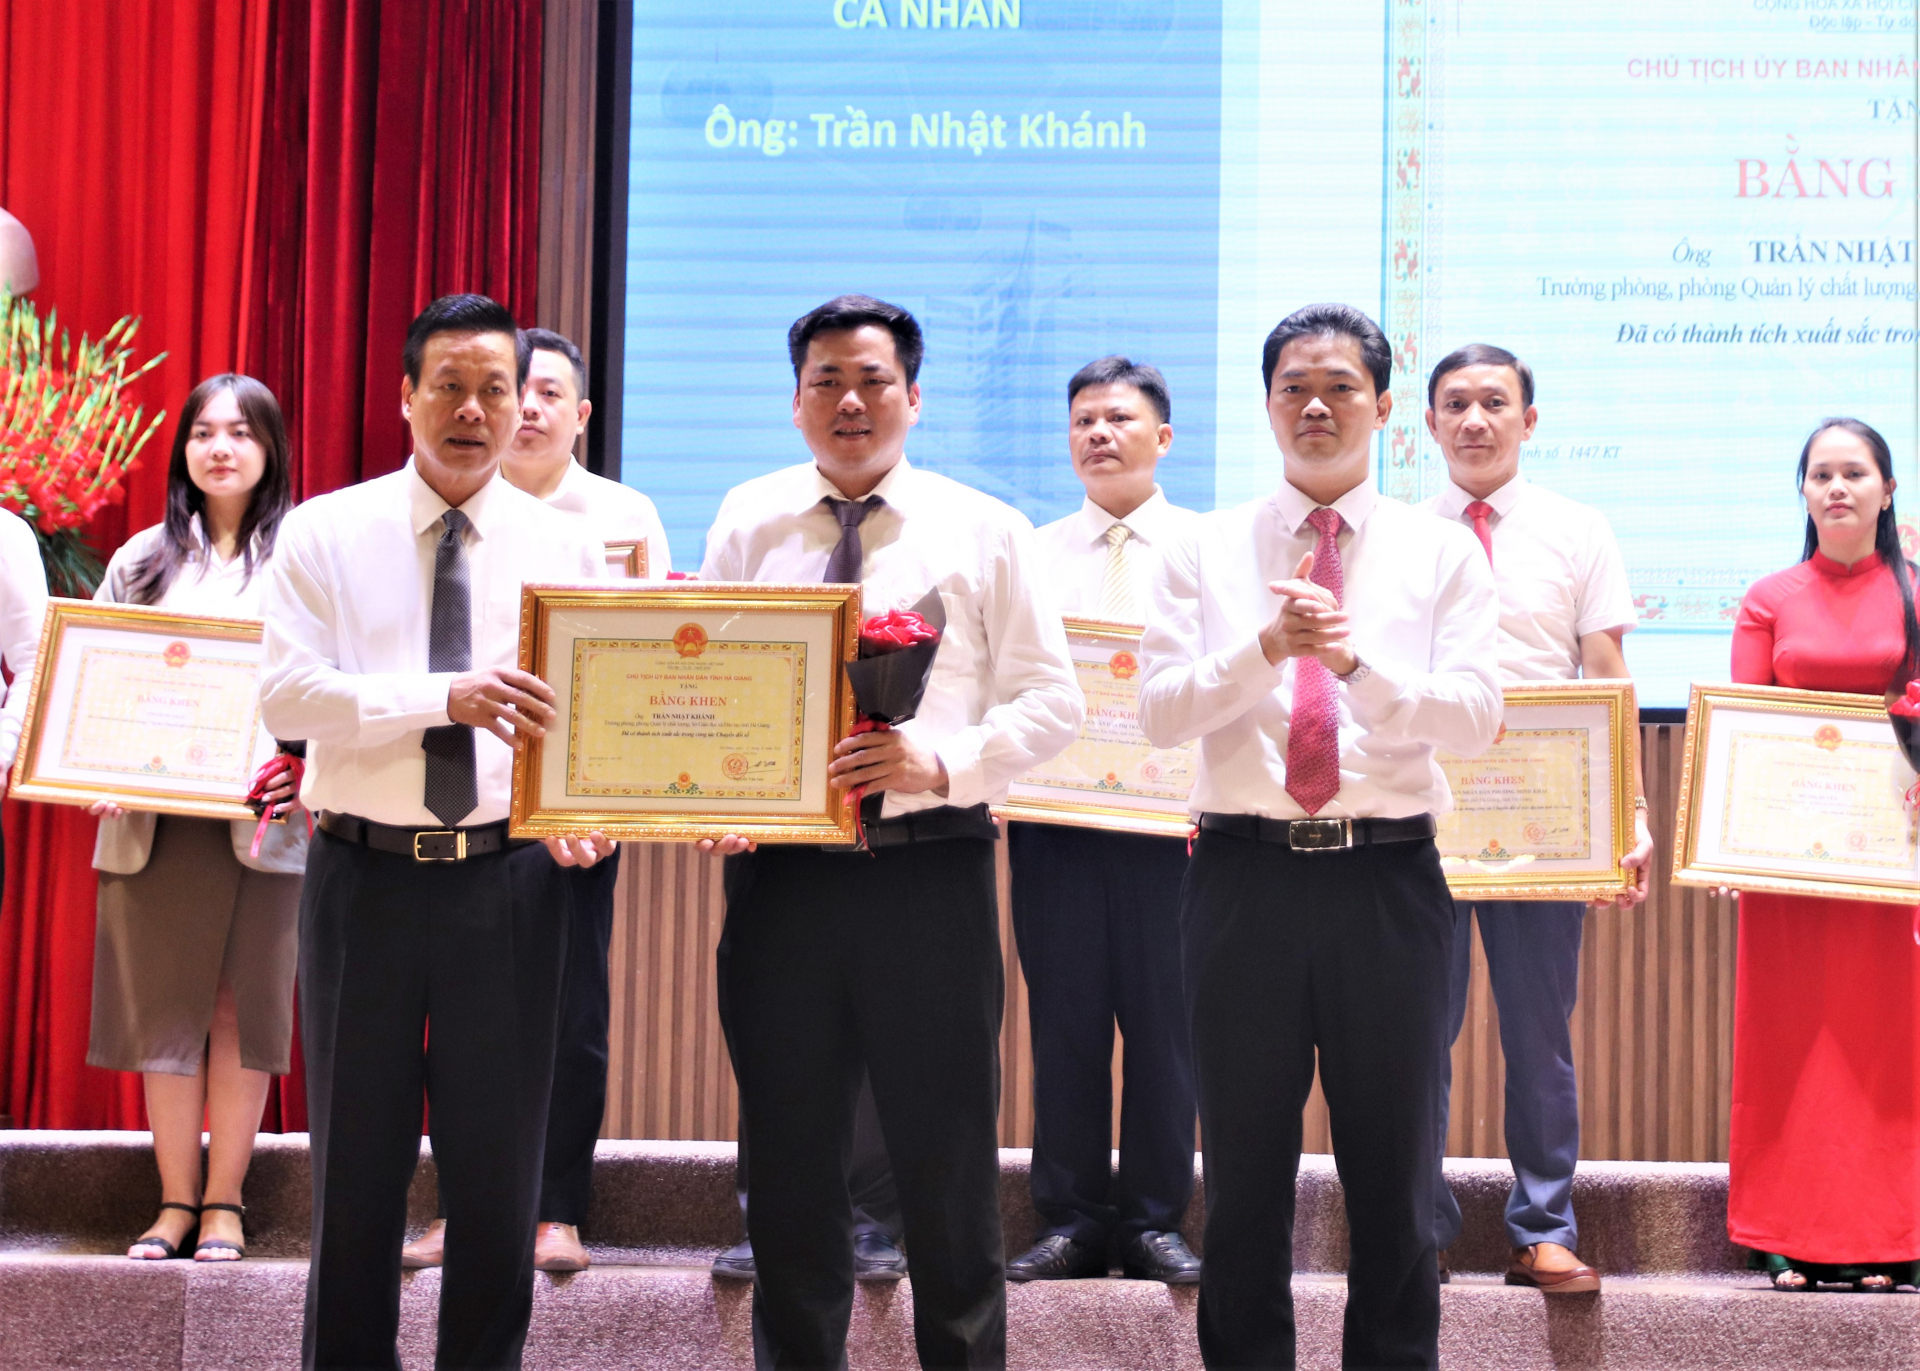 Chủ tịch UBND tỉnh Nguyễn Văn Sơn và Trưởng ban Tuyên giáo Tỉnh ủy Vũ Mạnh Hà tặng Bằng khen cho các cá nhân có thành tích xuất sắc trong công tác chuyển đổi số.